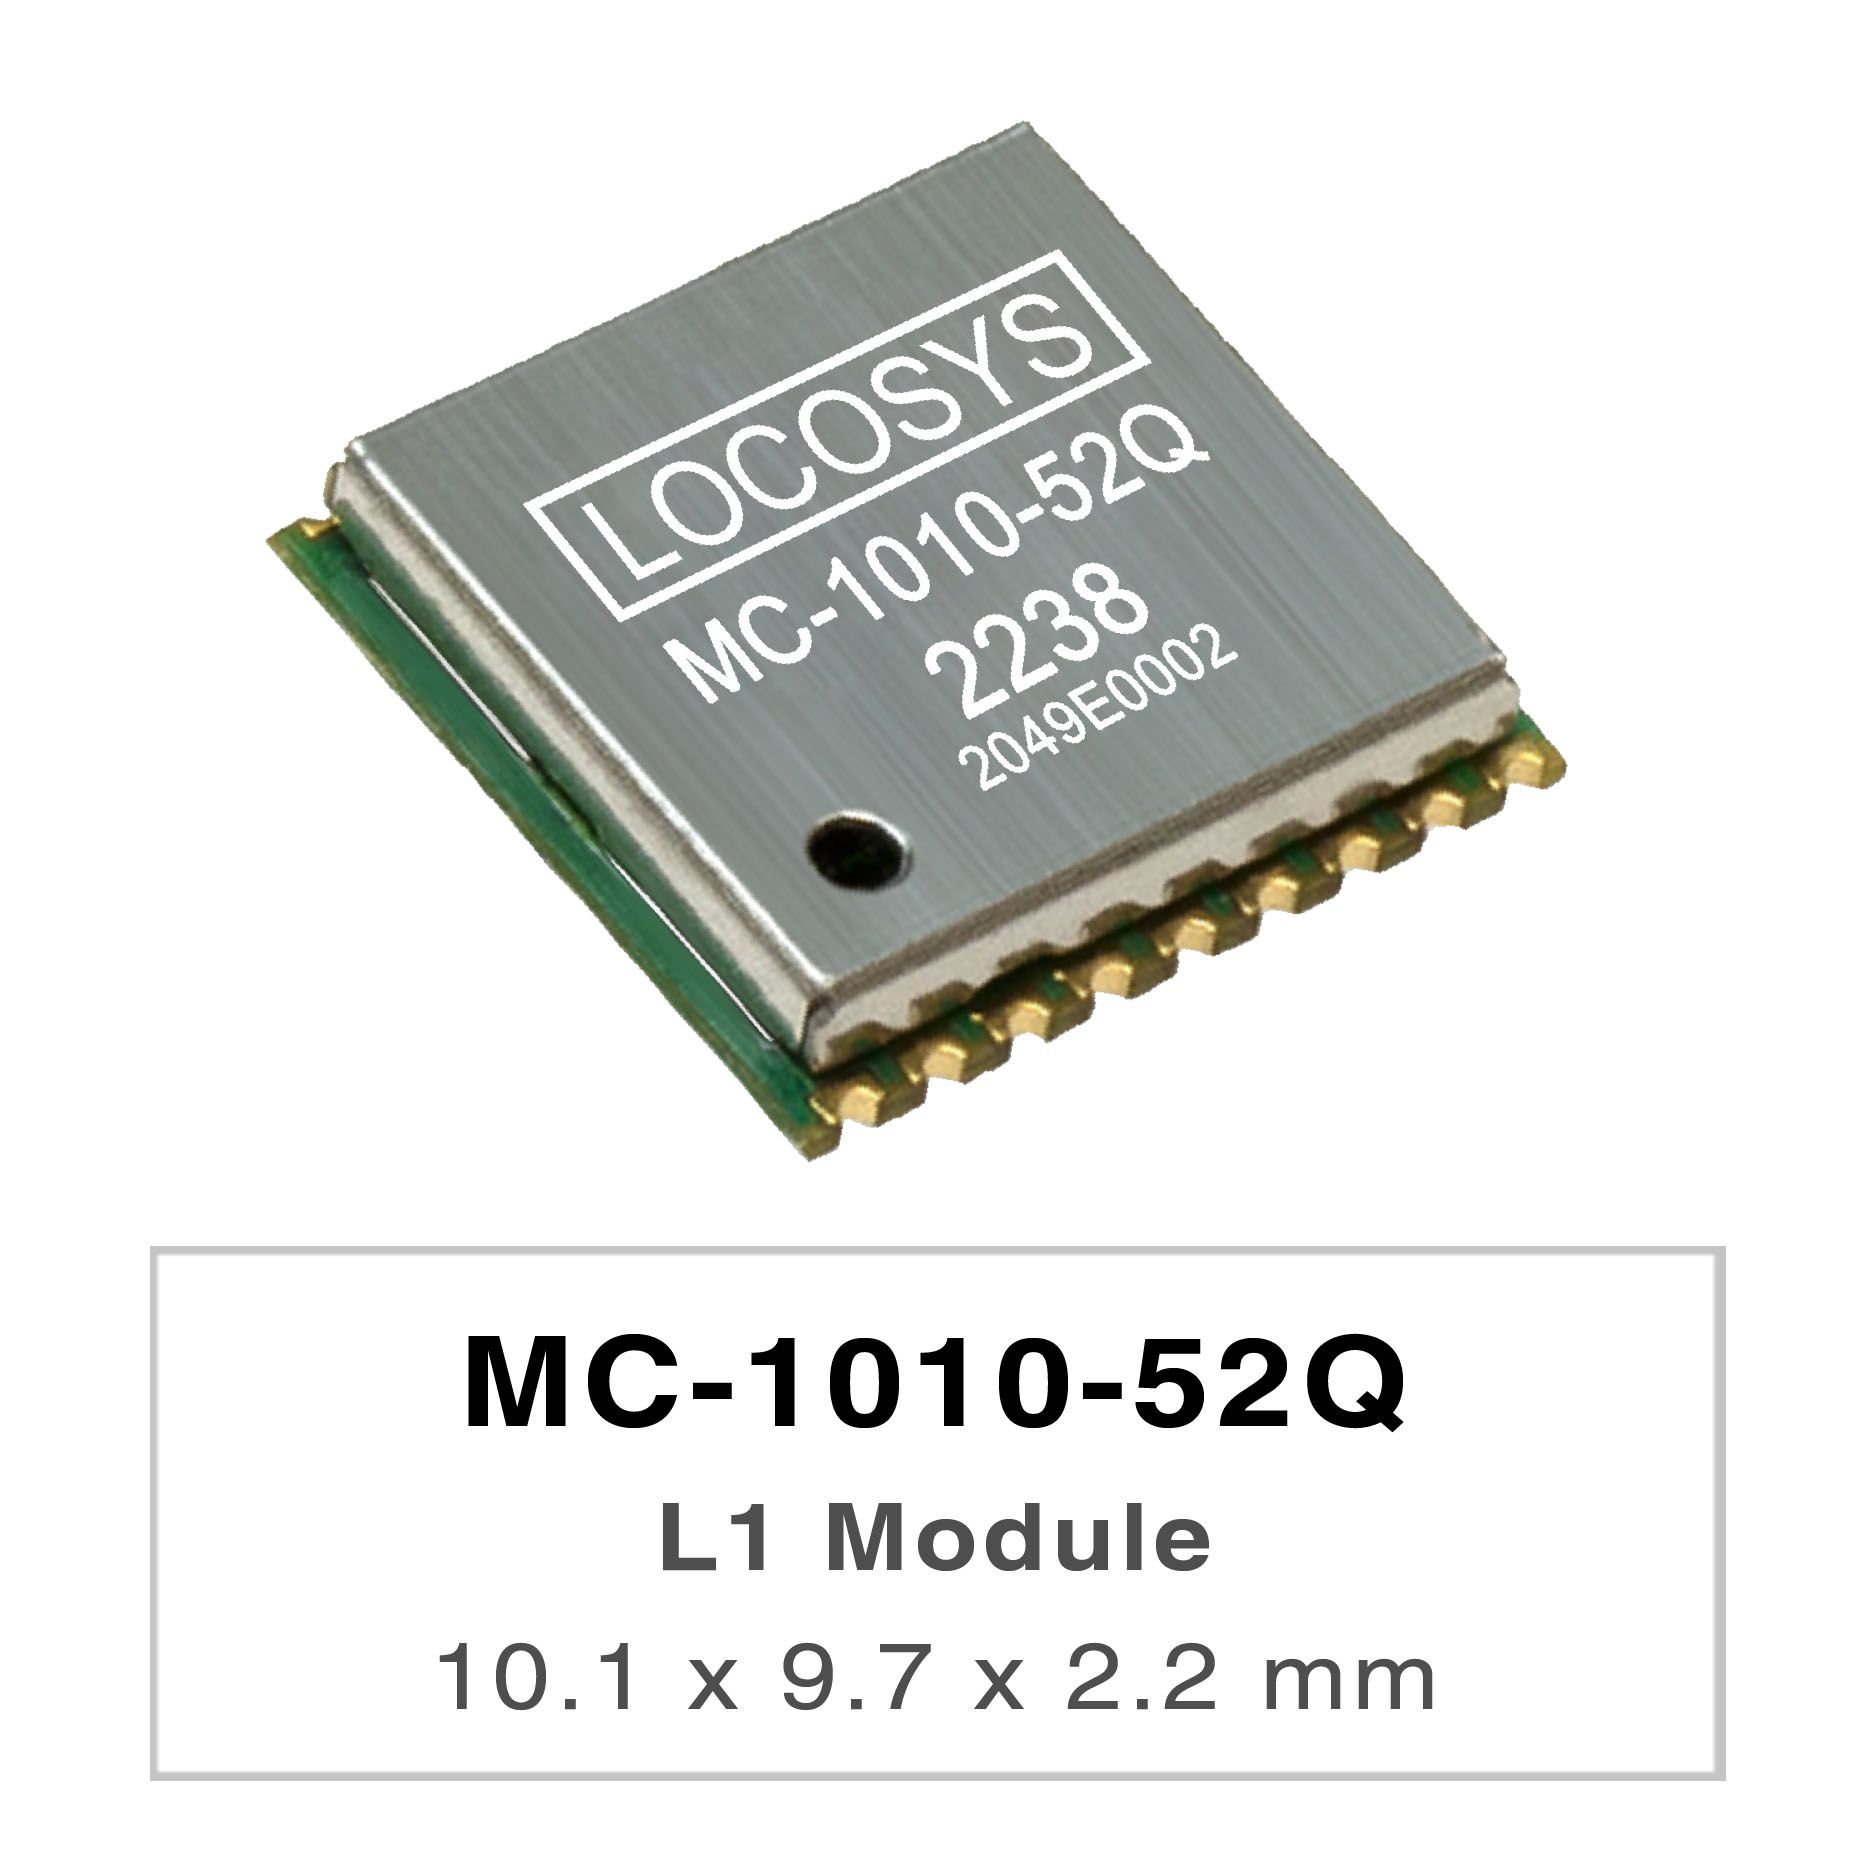 LOCOSYS MC-1010-52Q ist ein komplettes eigenständiges GNSS-Modul.